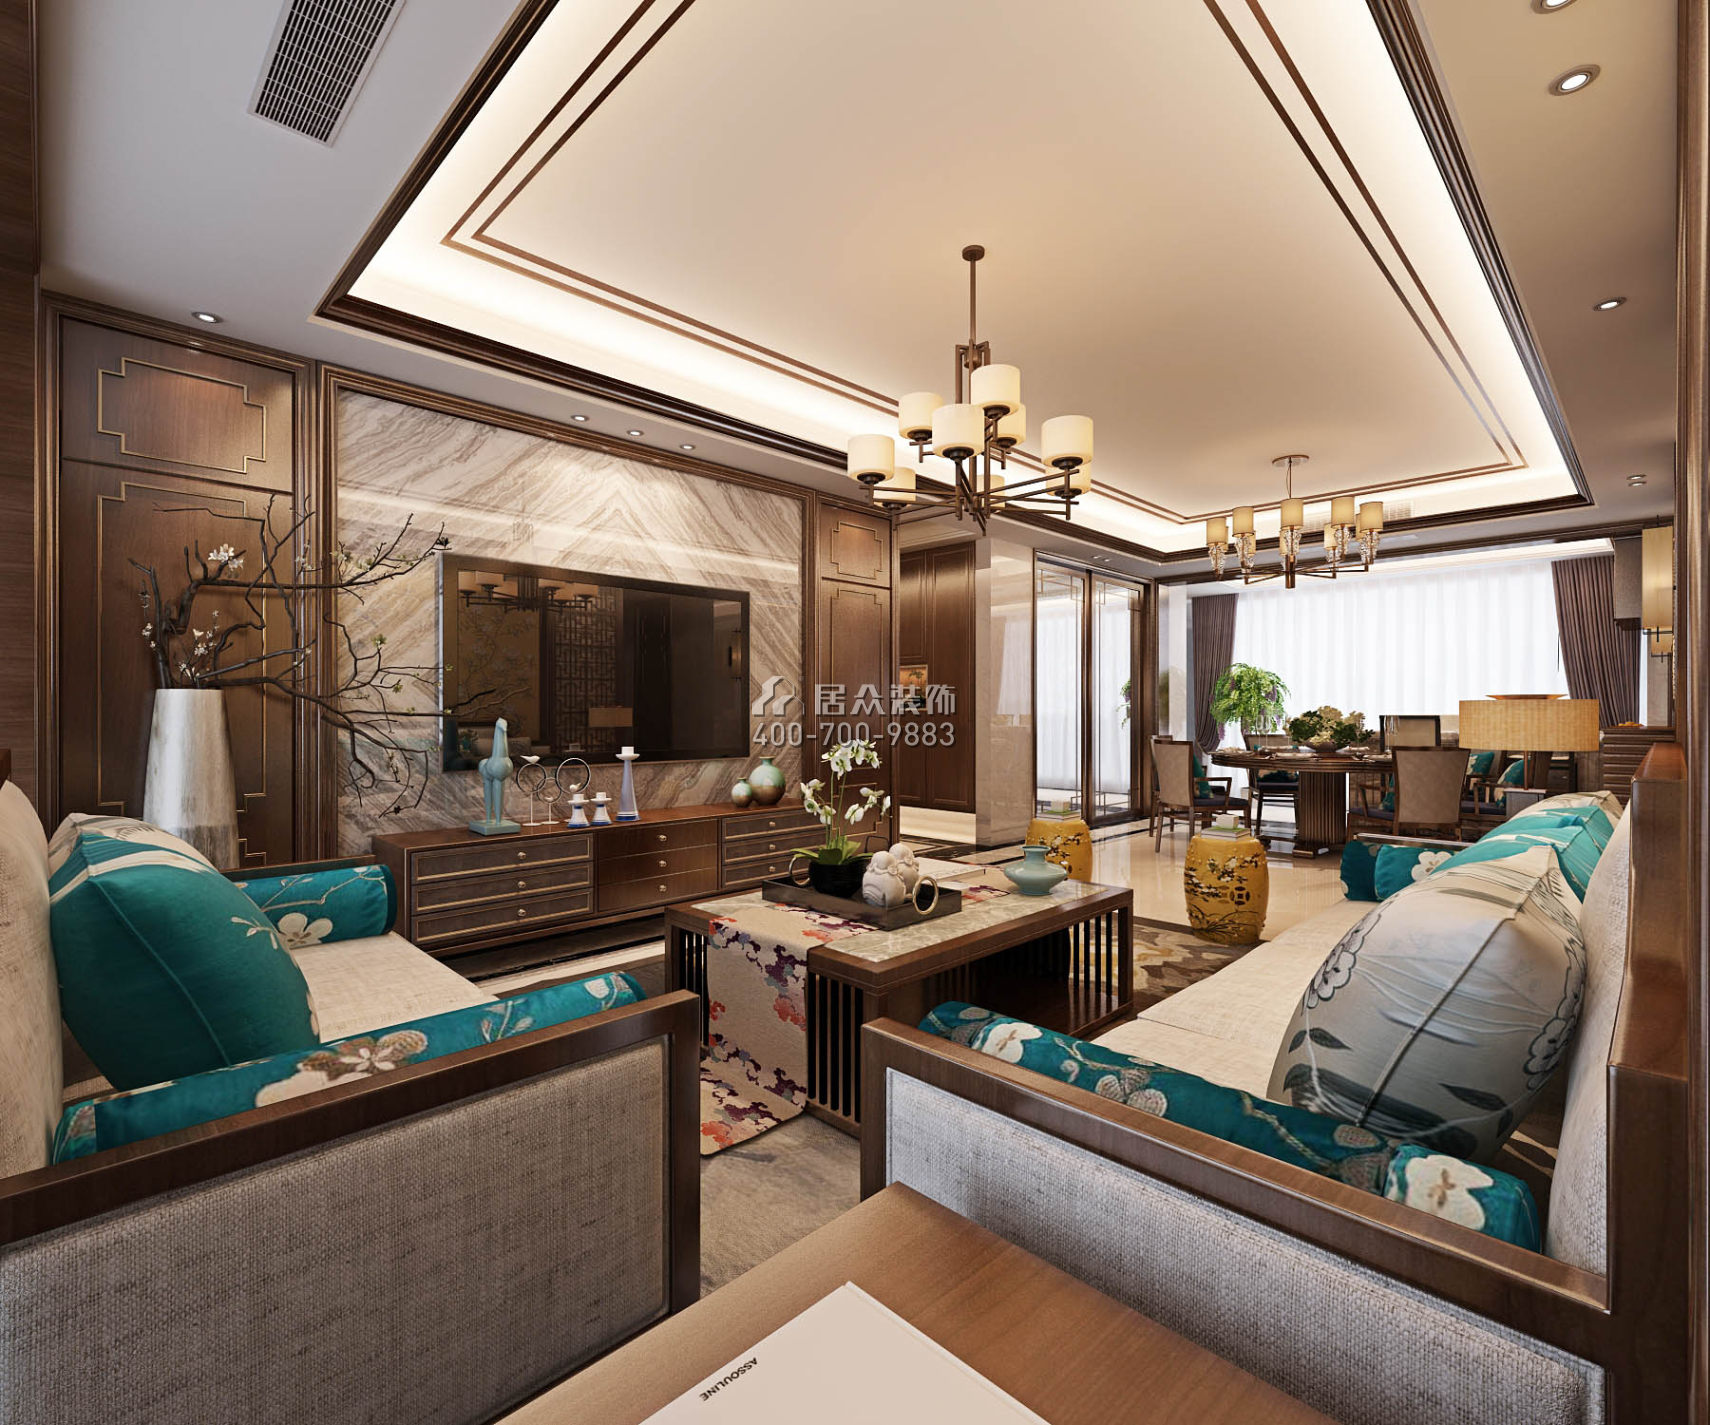 联投东方143平方米中式风格平层户型客厅装修效果图